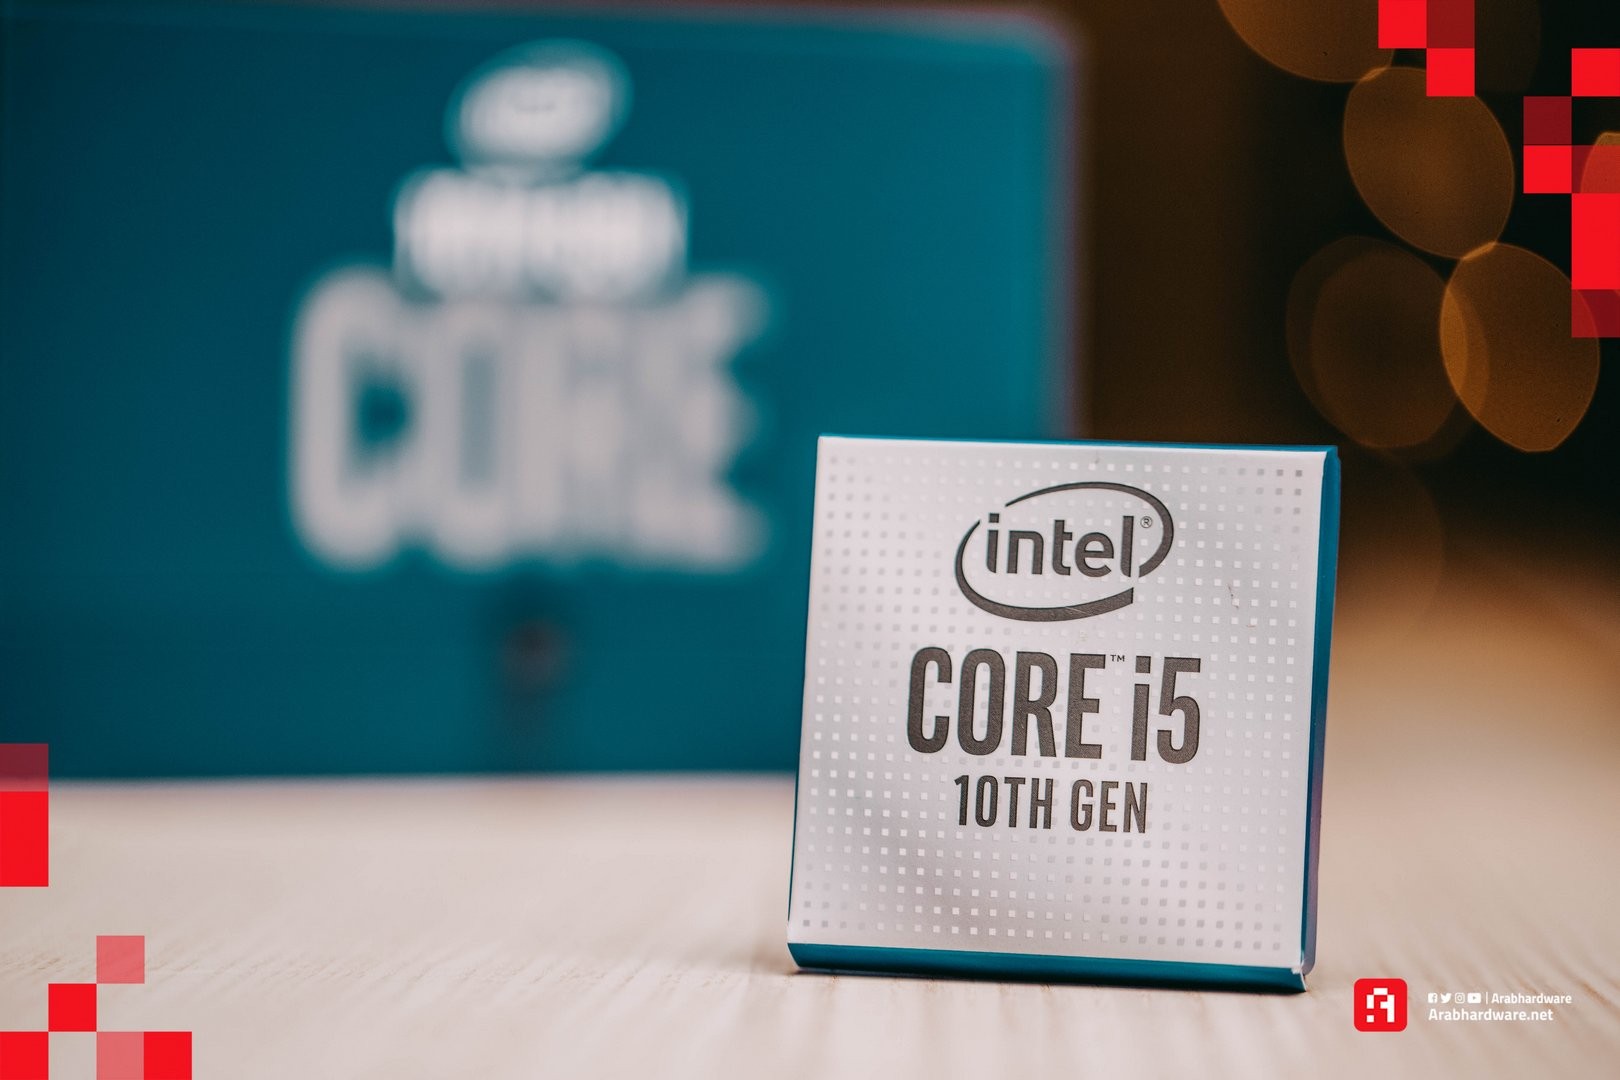 Intel Core i5 10600k من أجل تجميعة الكمبيوتر القادمةش